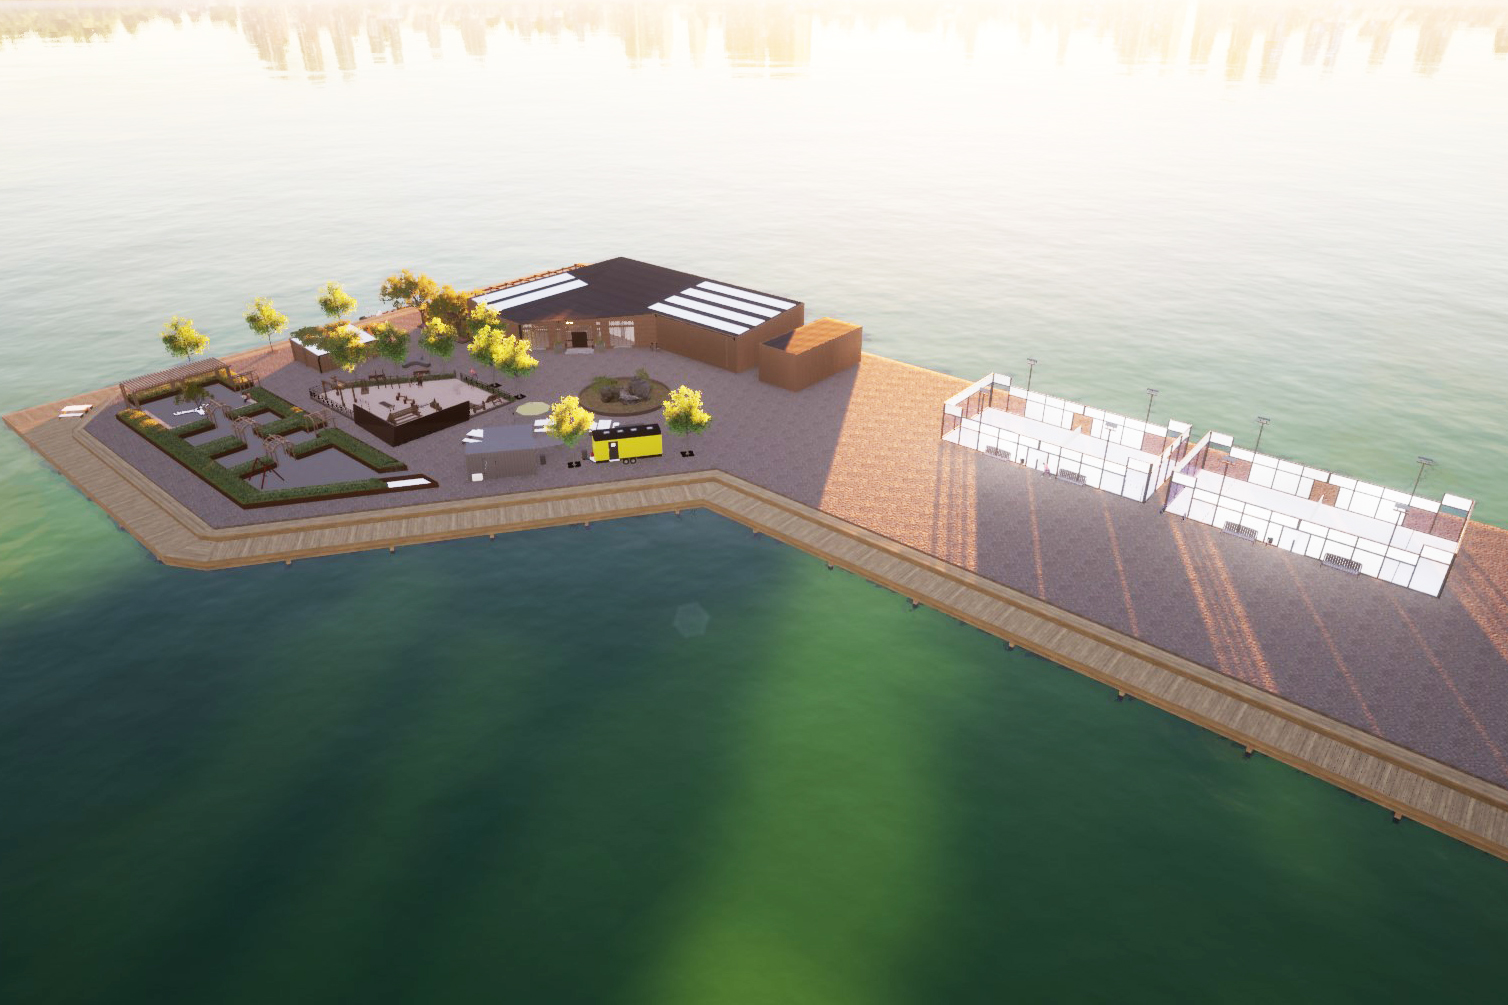 Visualisering av en hamnpir med byggnader, grönska och padelbanor.